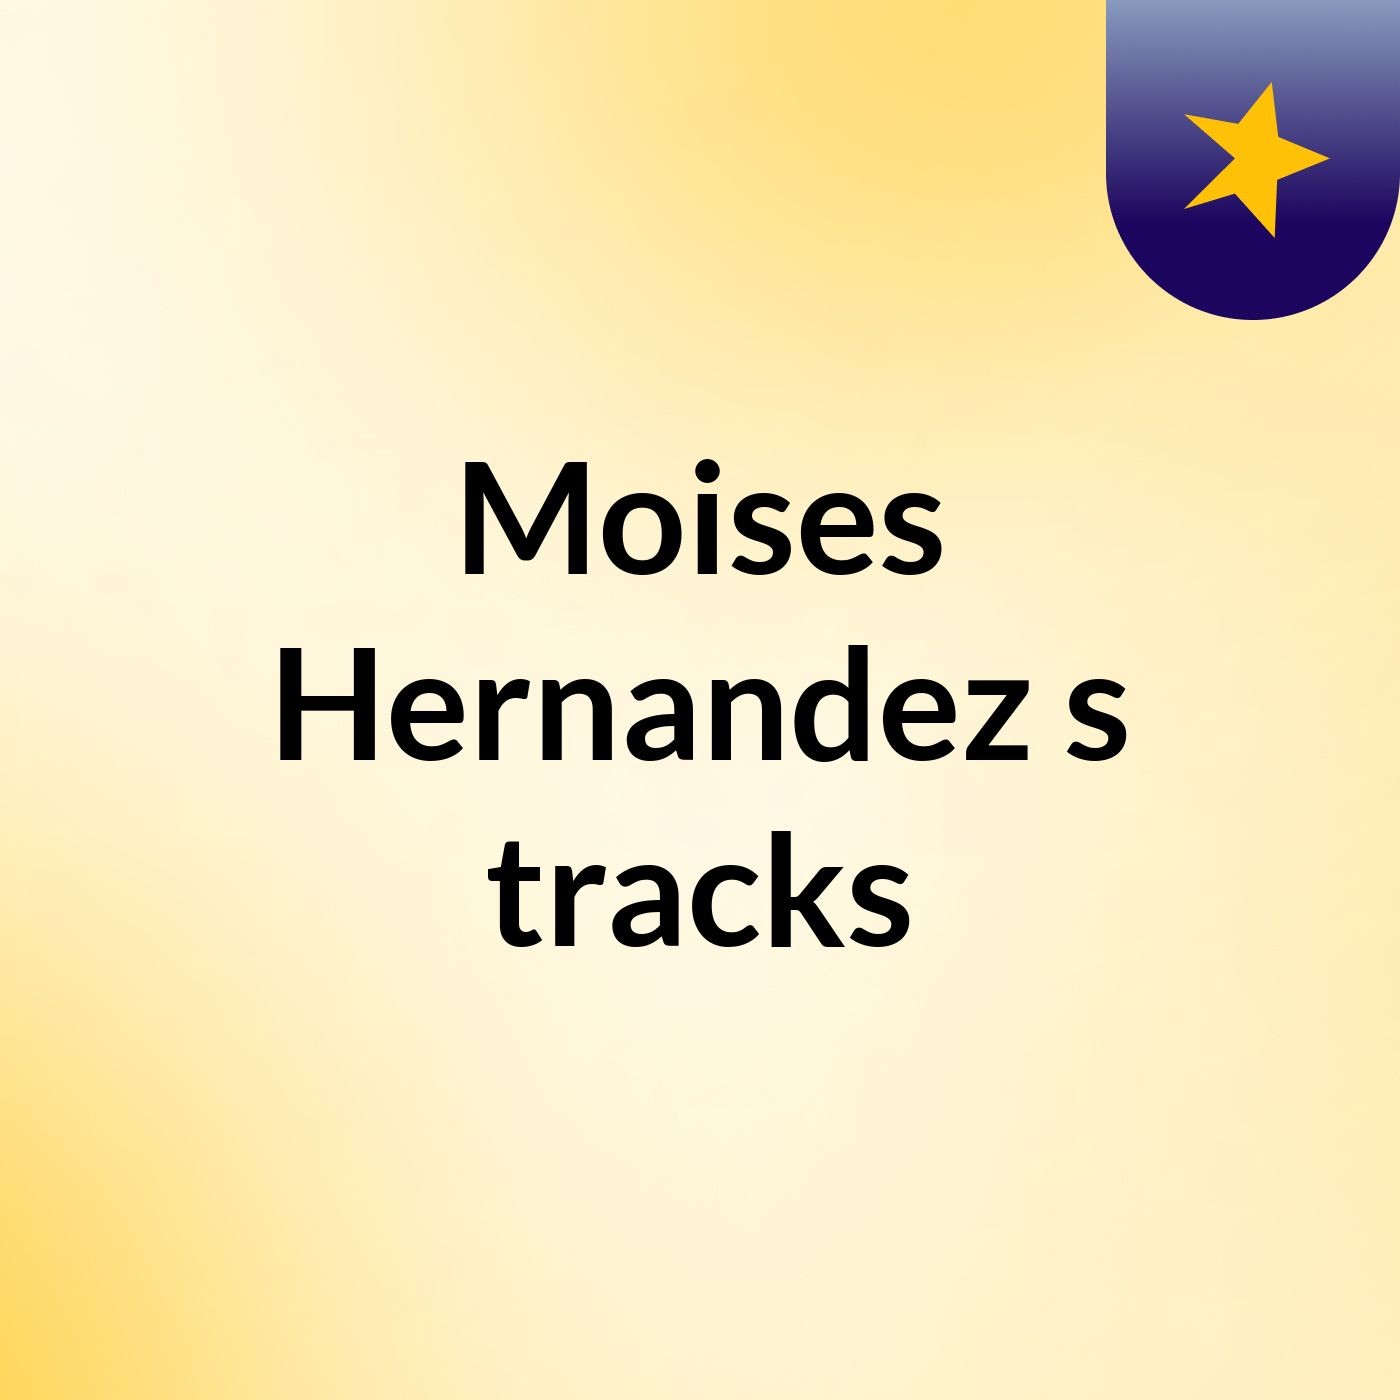 Moises Hernandez's tracks